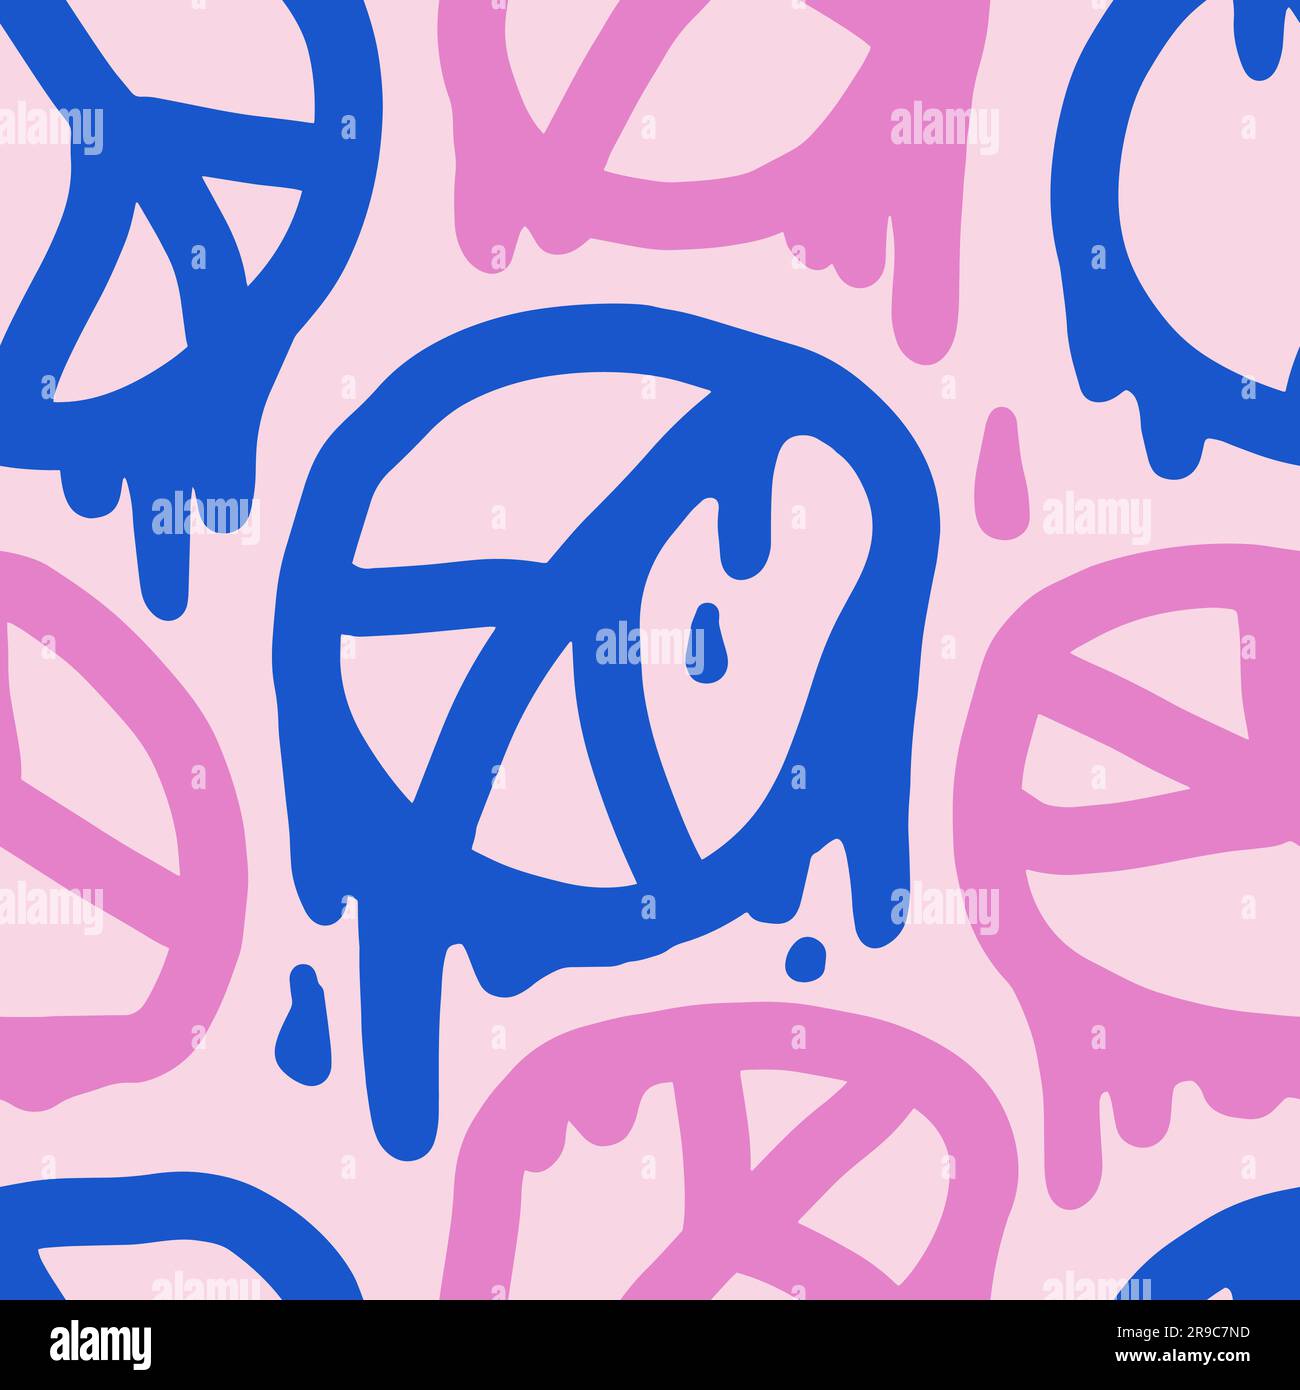 1970 motivo Liquid Peace Seamless in colore rosa e blu. Settanta, stampa psichedelica, sfondo. Hippie Aesthetic. Illustrazione vettoriale disegnata a mano. Copertina grafica, T-shirt, adesivo, social media. Illustrazione Vettoriale